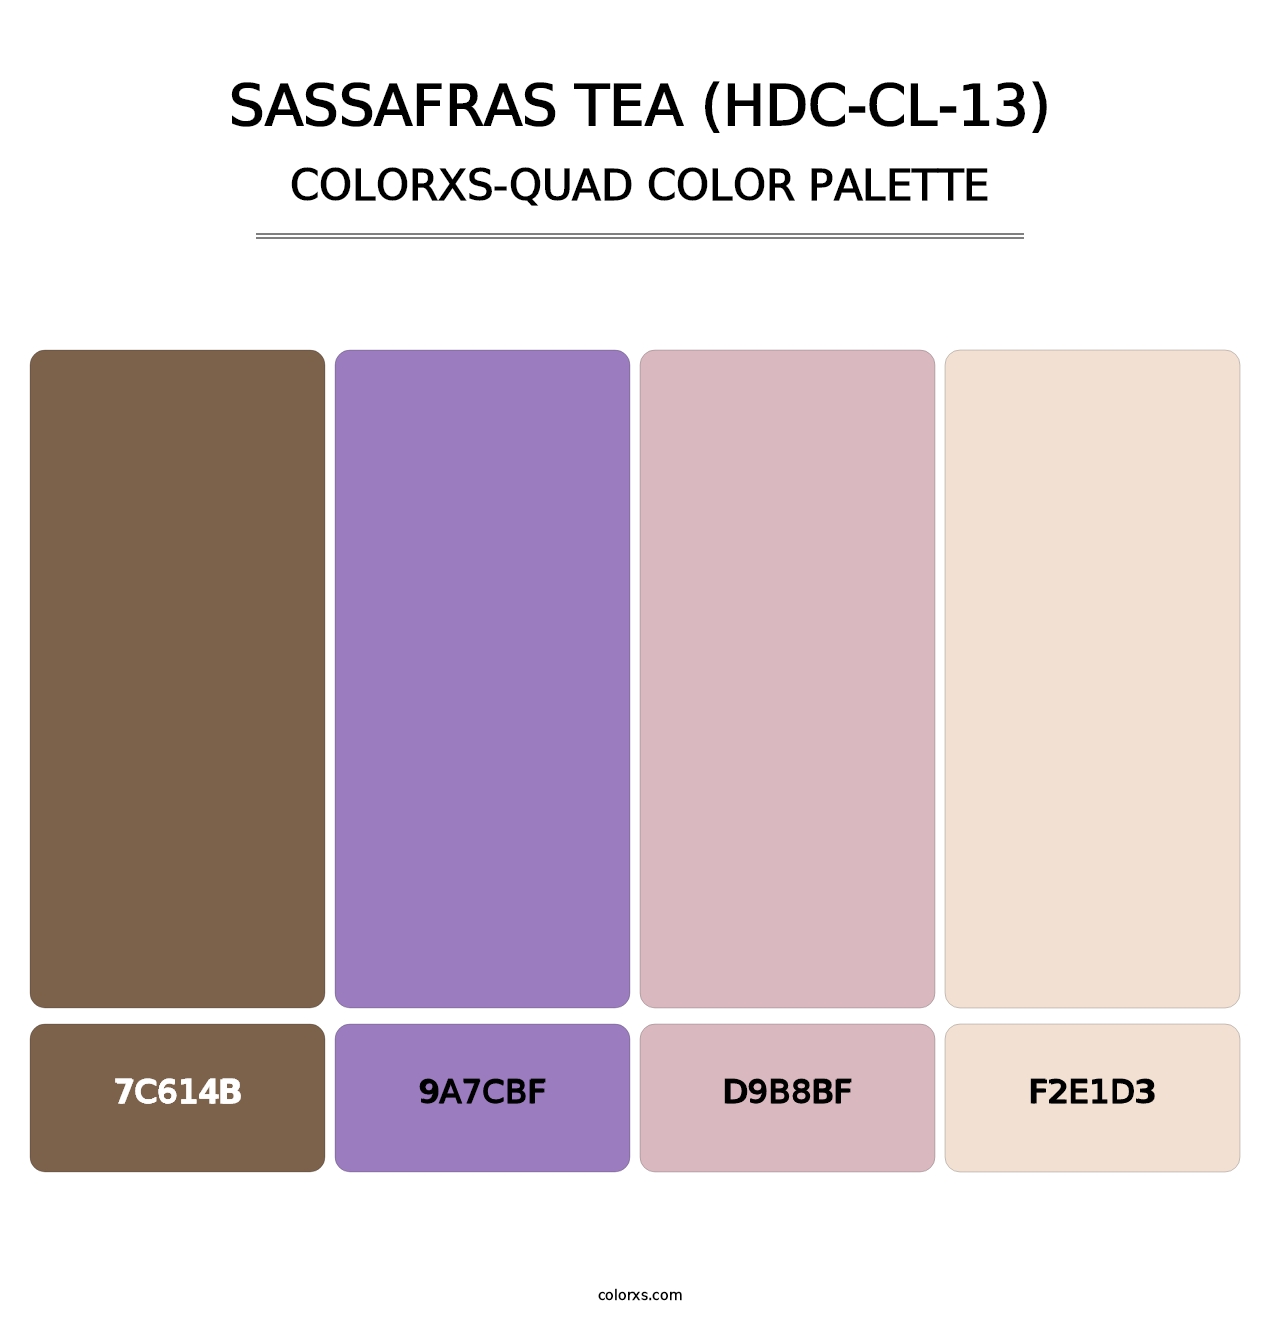 Sassafras Tea (HDC-CL-13) - Colorxs Quad Palette